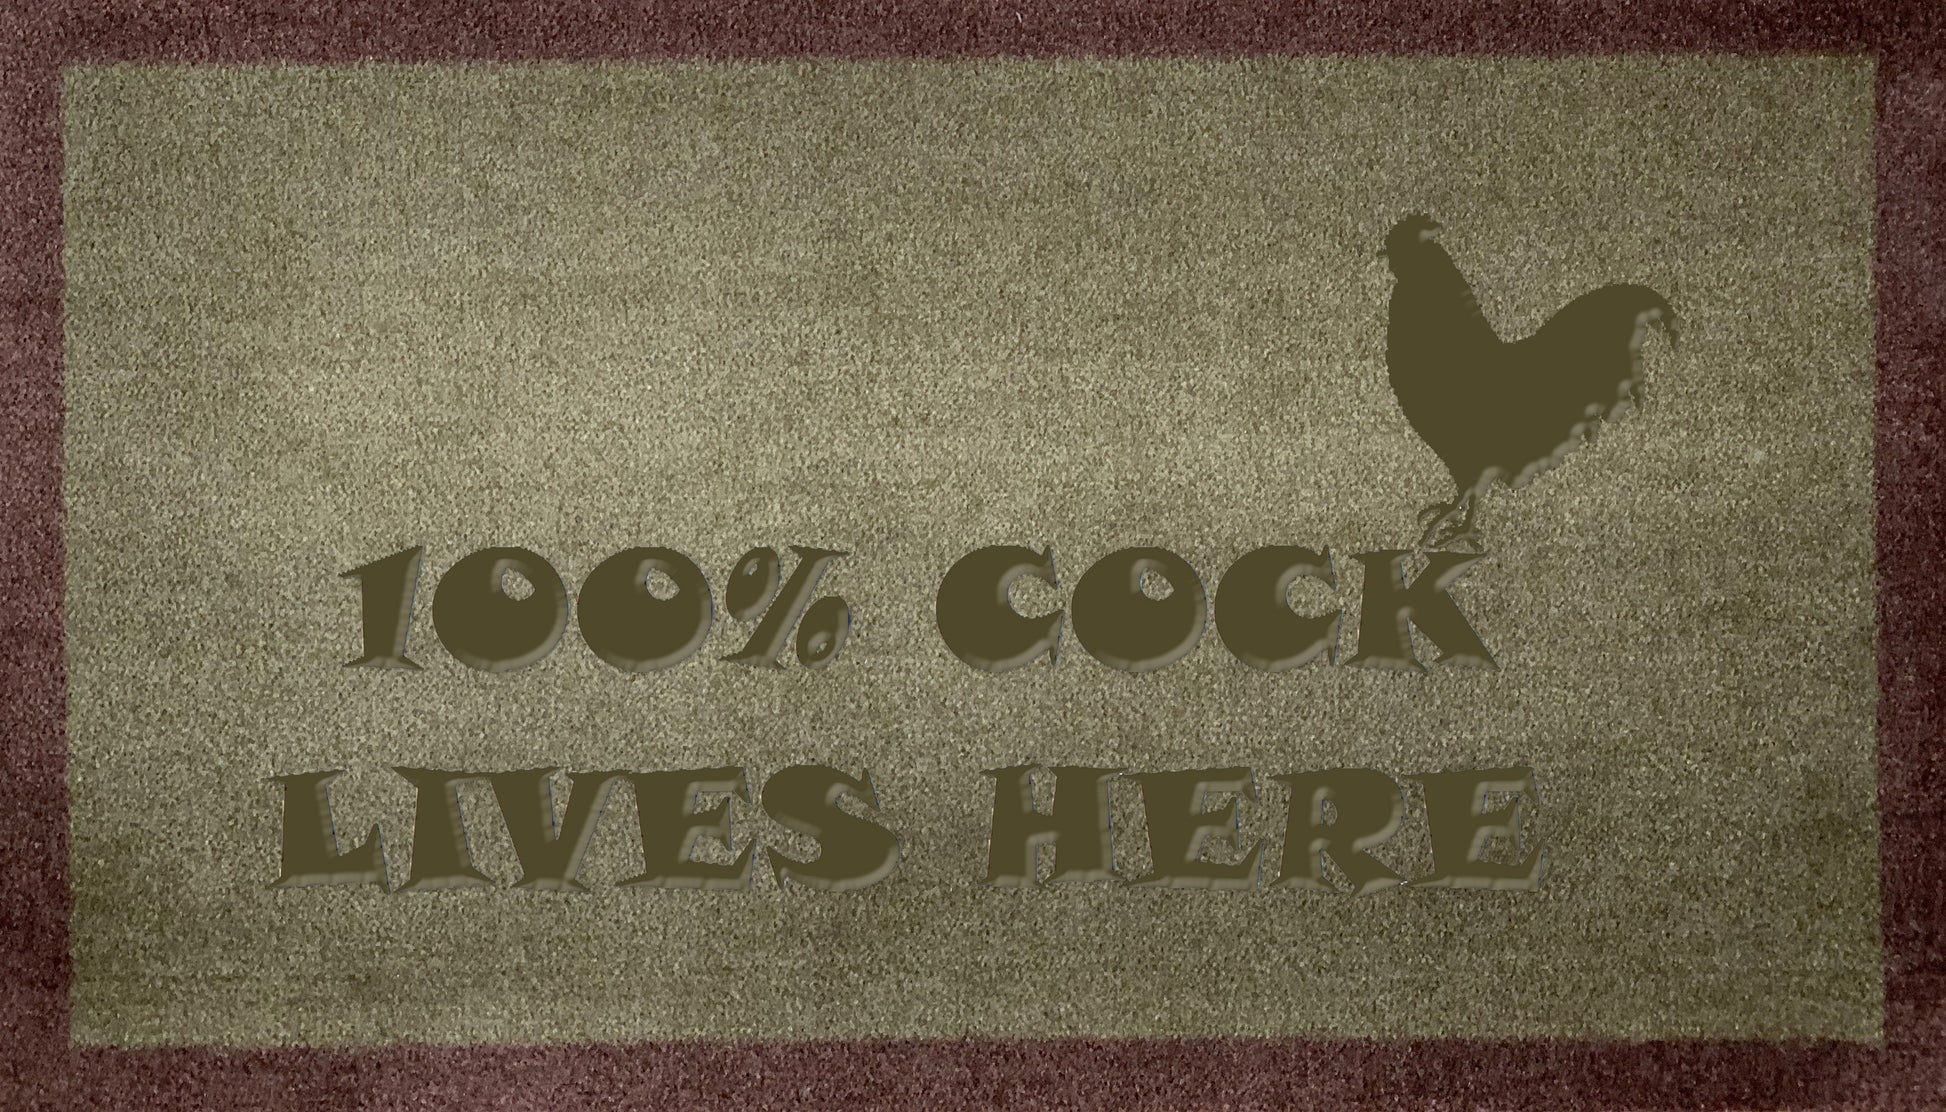 Artisan 100% Cock Lives Here - DoormatsOnline